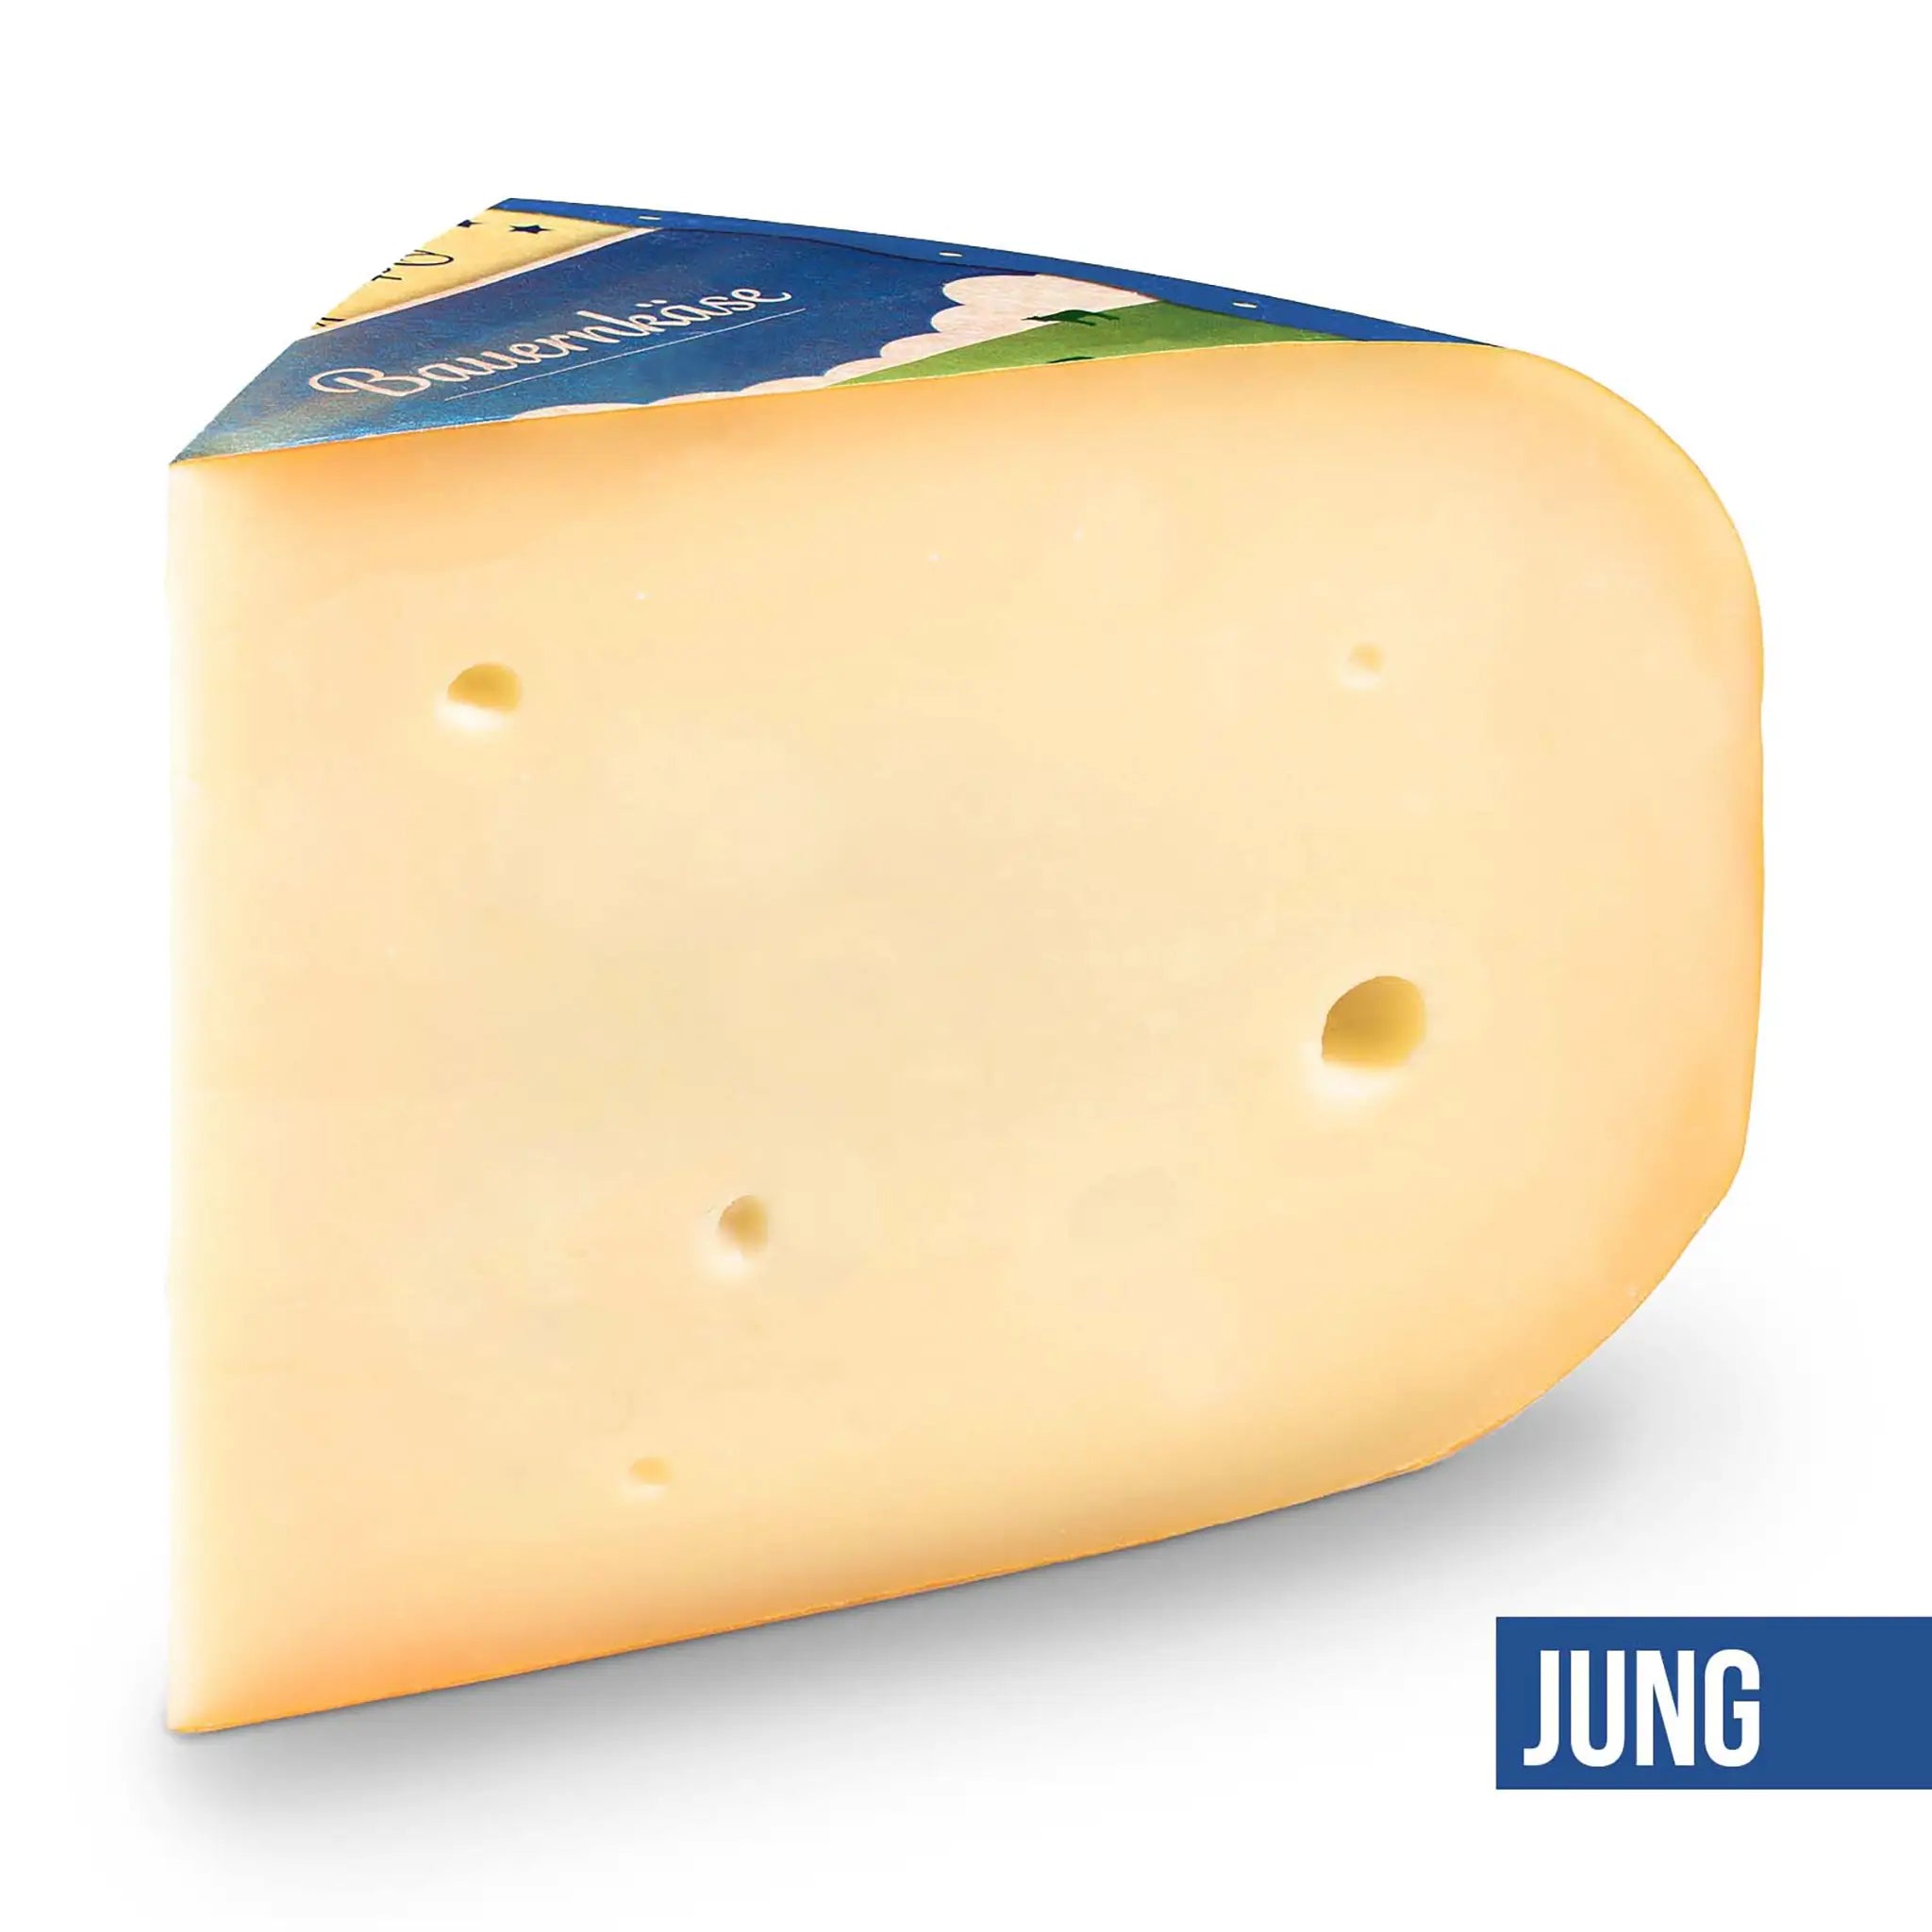 Das Käse-Wurst-Probierpaket